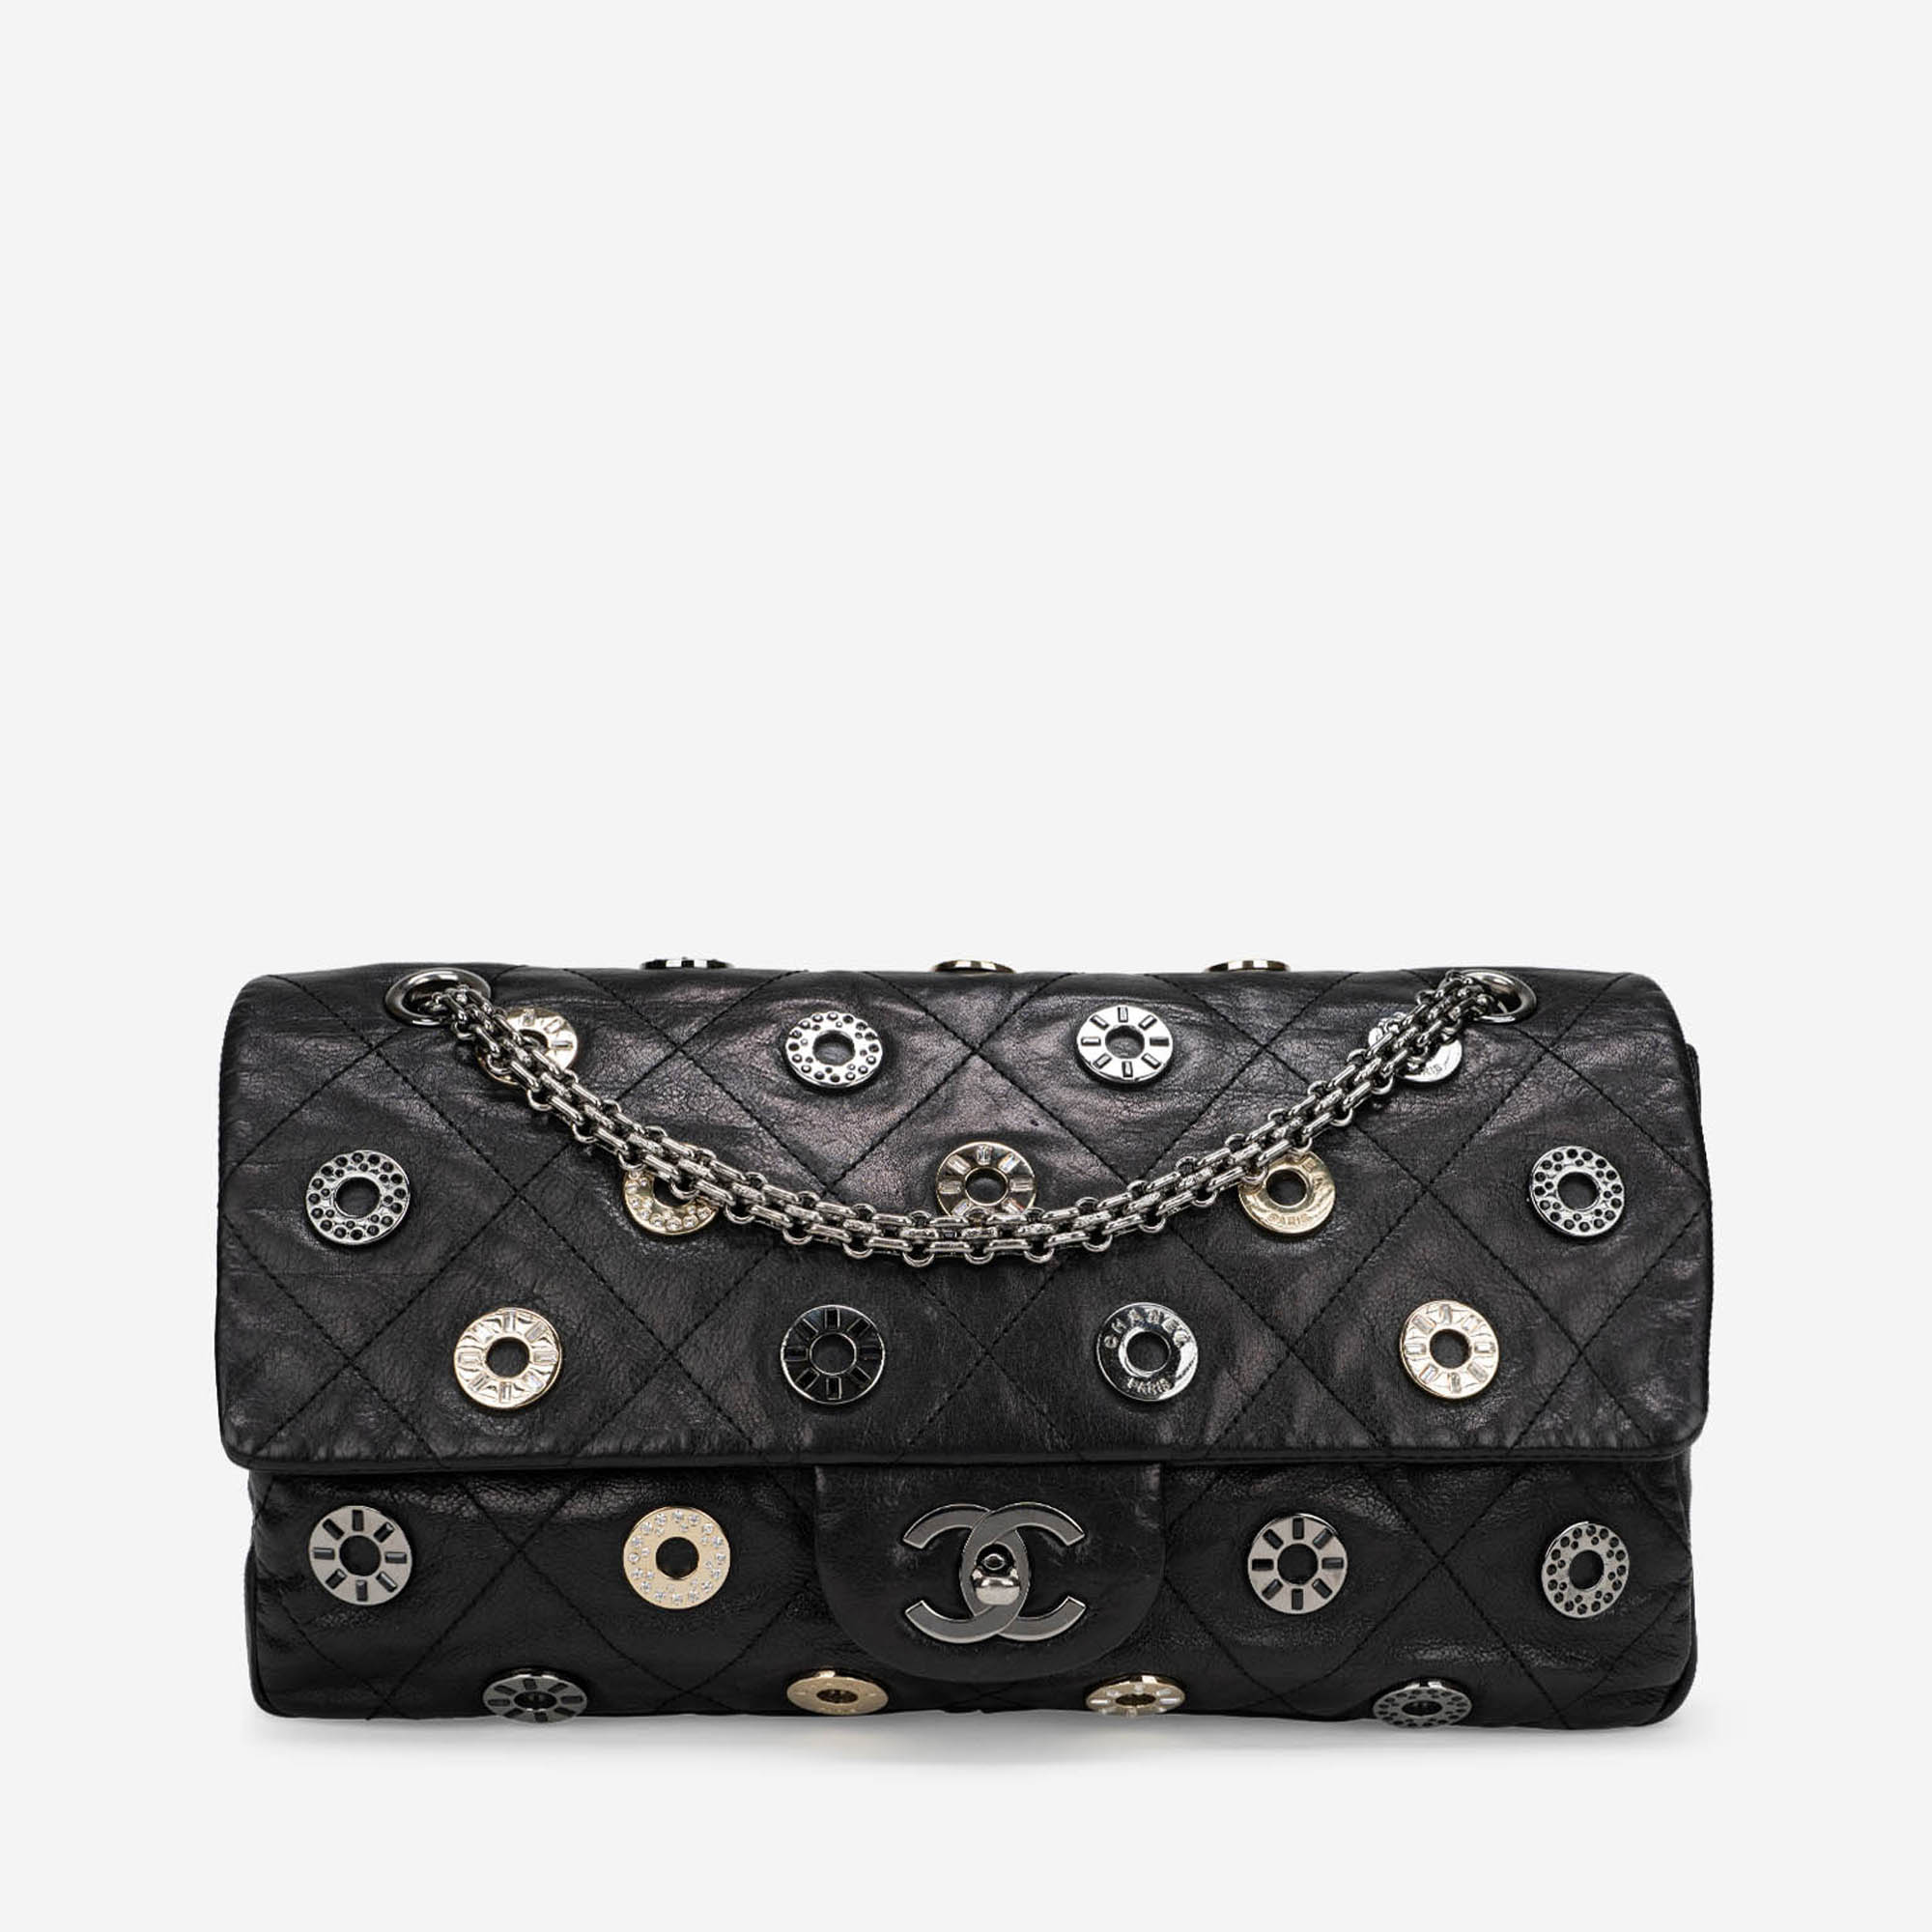 Gebrauchte Chanel Tasche Timeless Medium Swarovski / Chevre Schwarz Schwarz | Verkaufen Sie Ihre Designer-Tasche auf Saclab.com